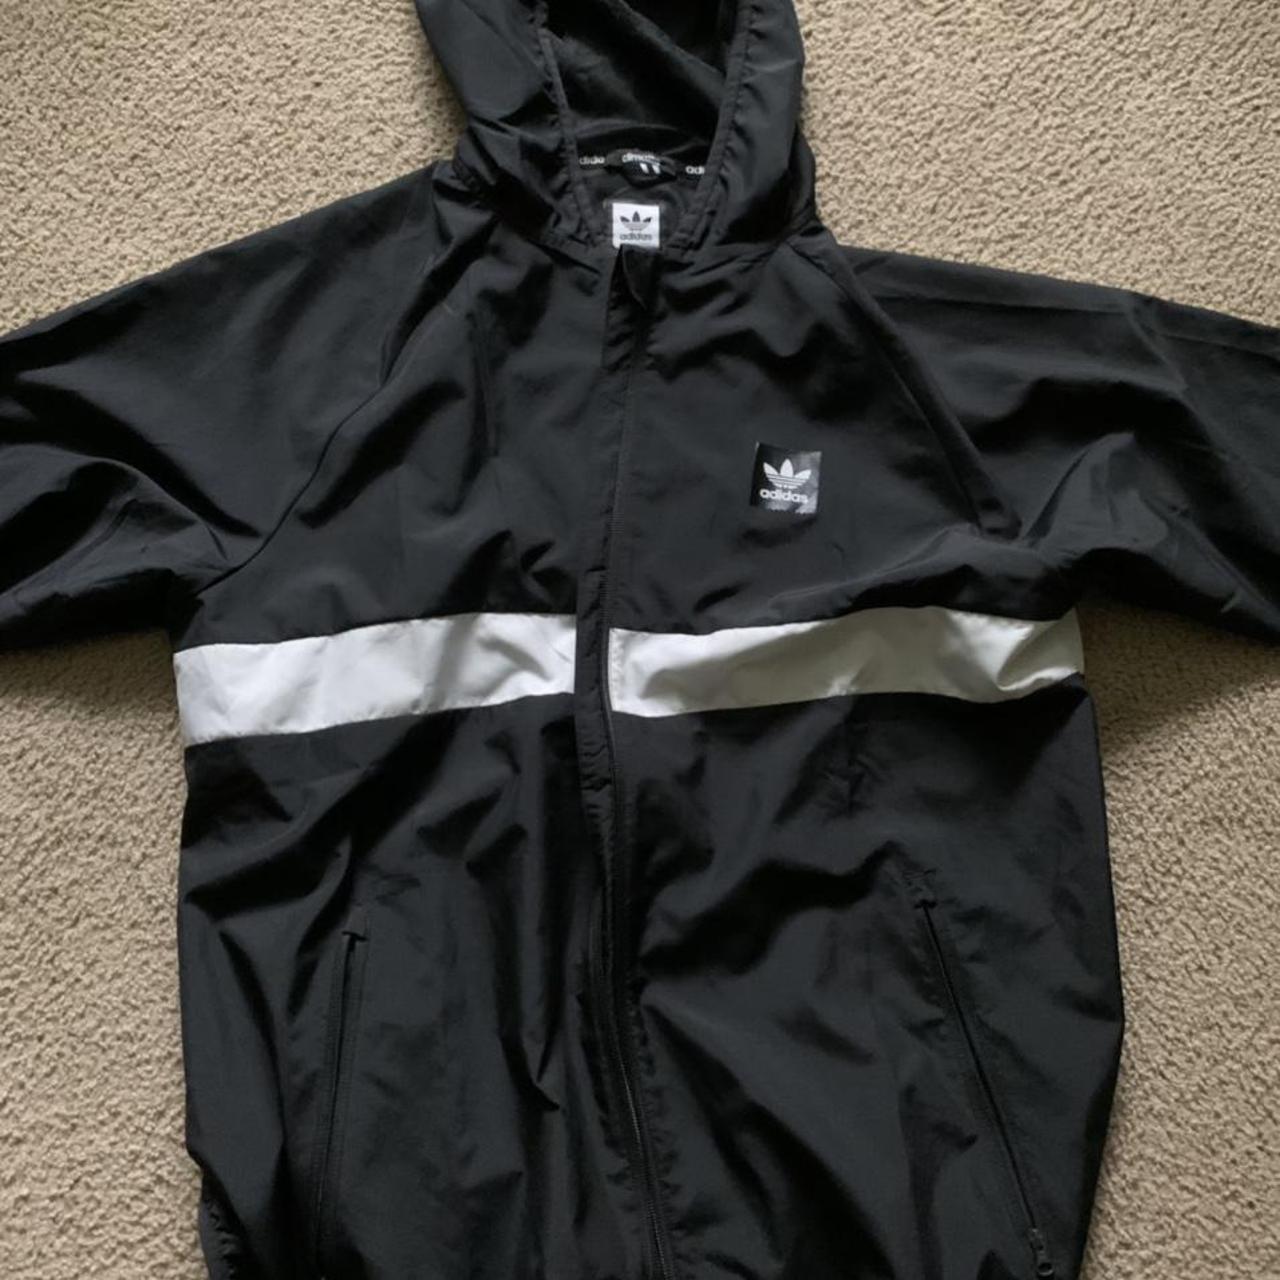 Product Image 2 - Adidas spring jacket
Light jacket, worn